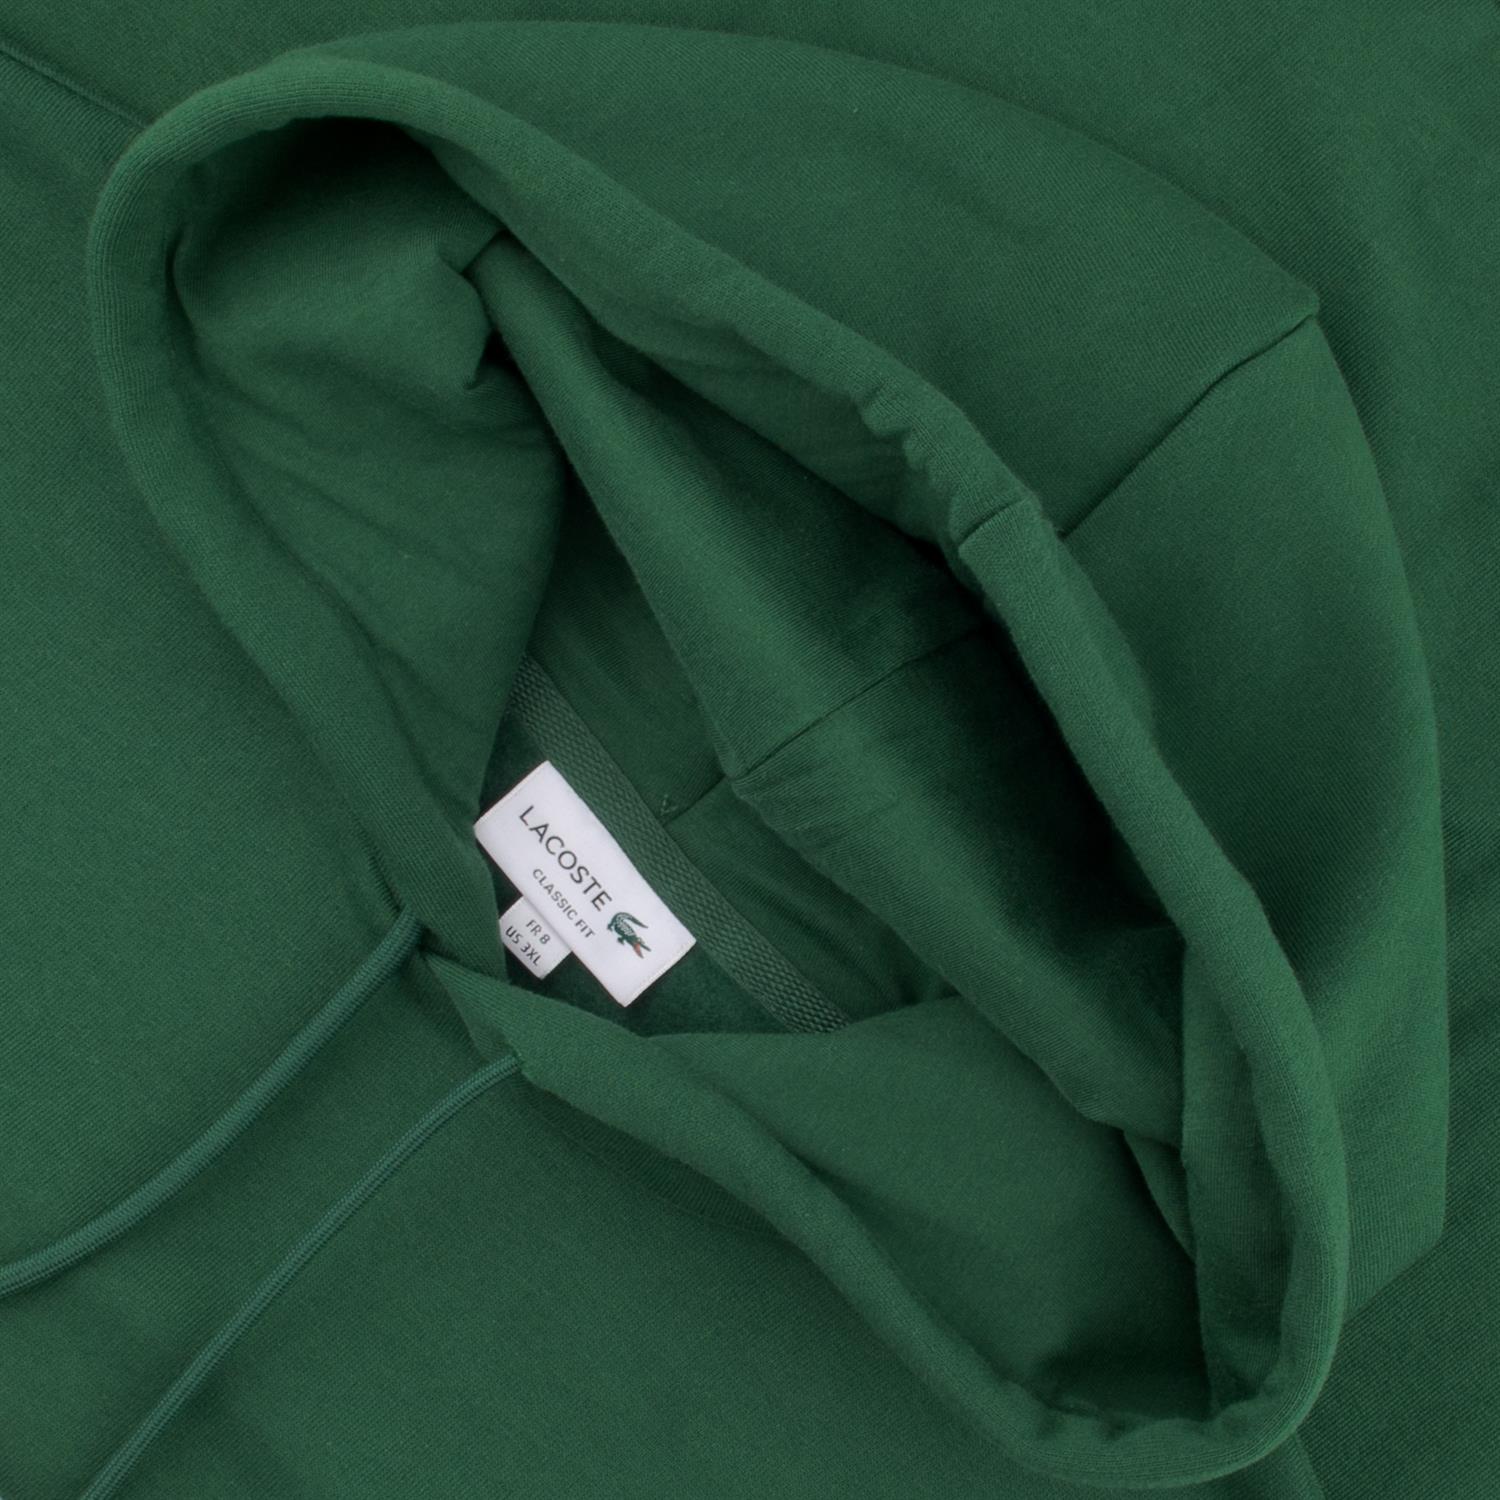 LACOSTE Sweatshirt in Herrenmode kaufen Übergrößen grün